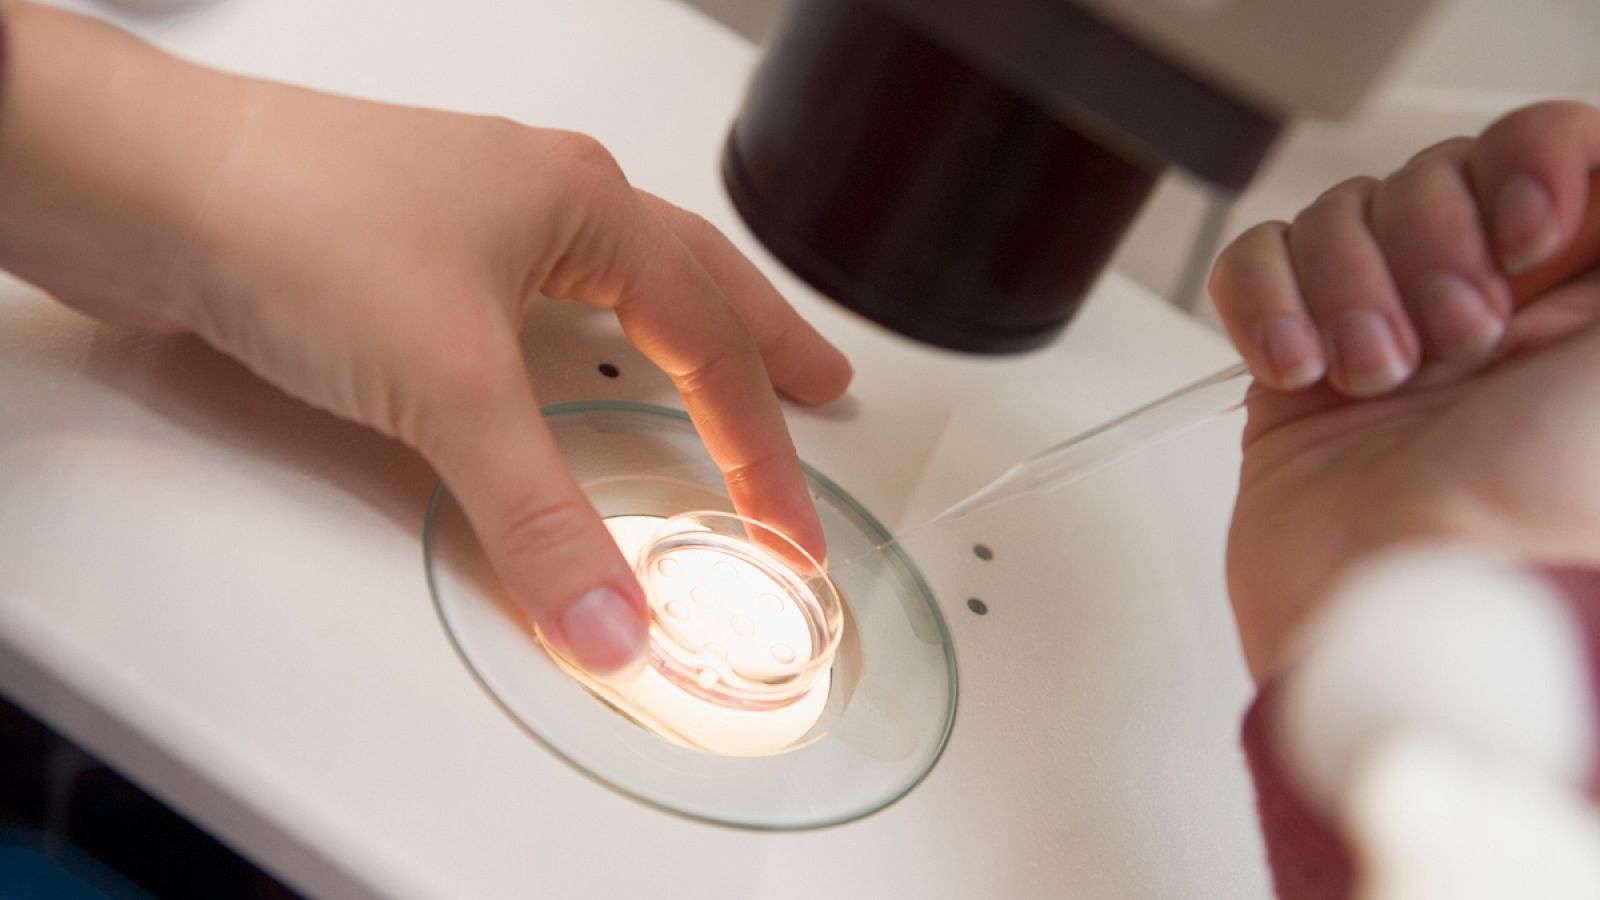 En España, las investigaciones con embriones humanos solo pueden tener finalidades científicas.